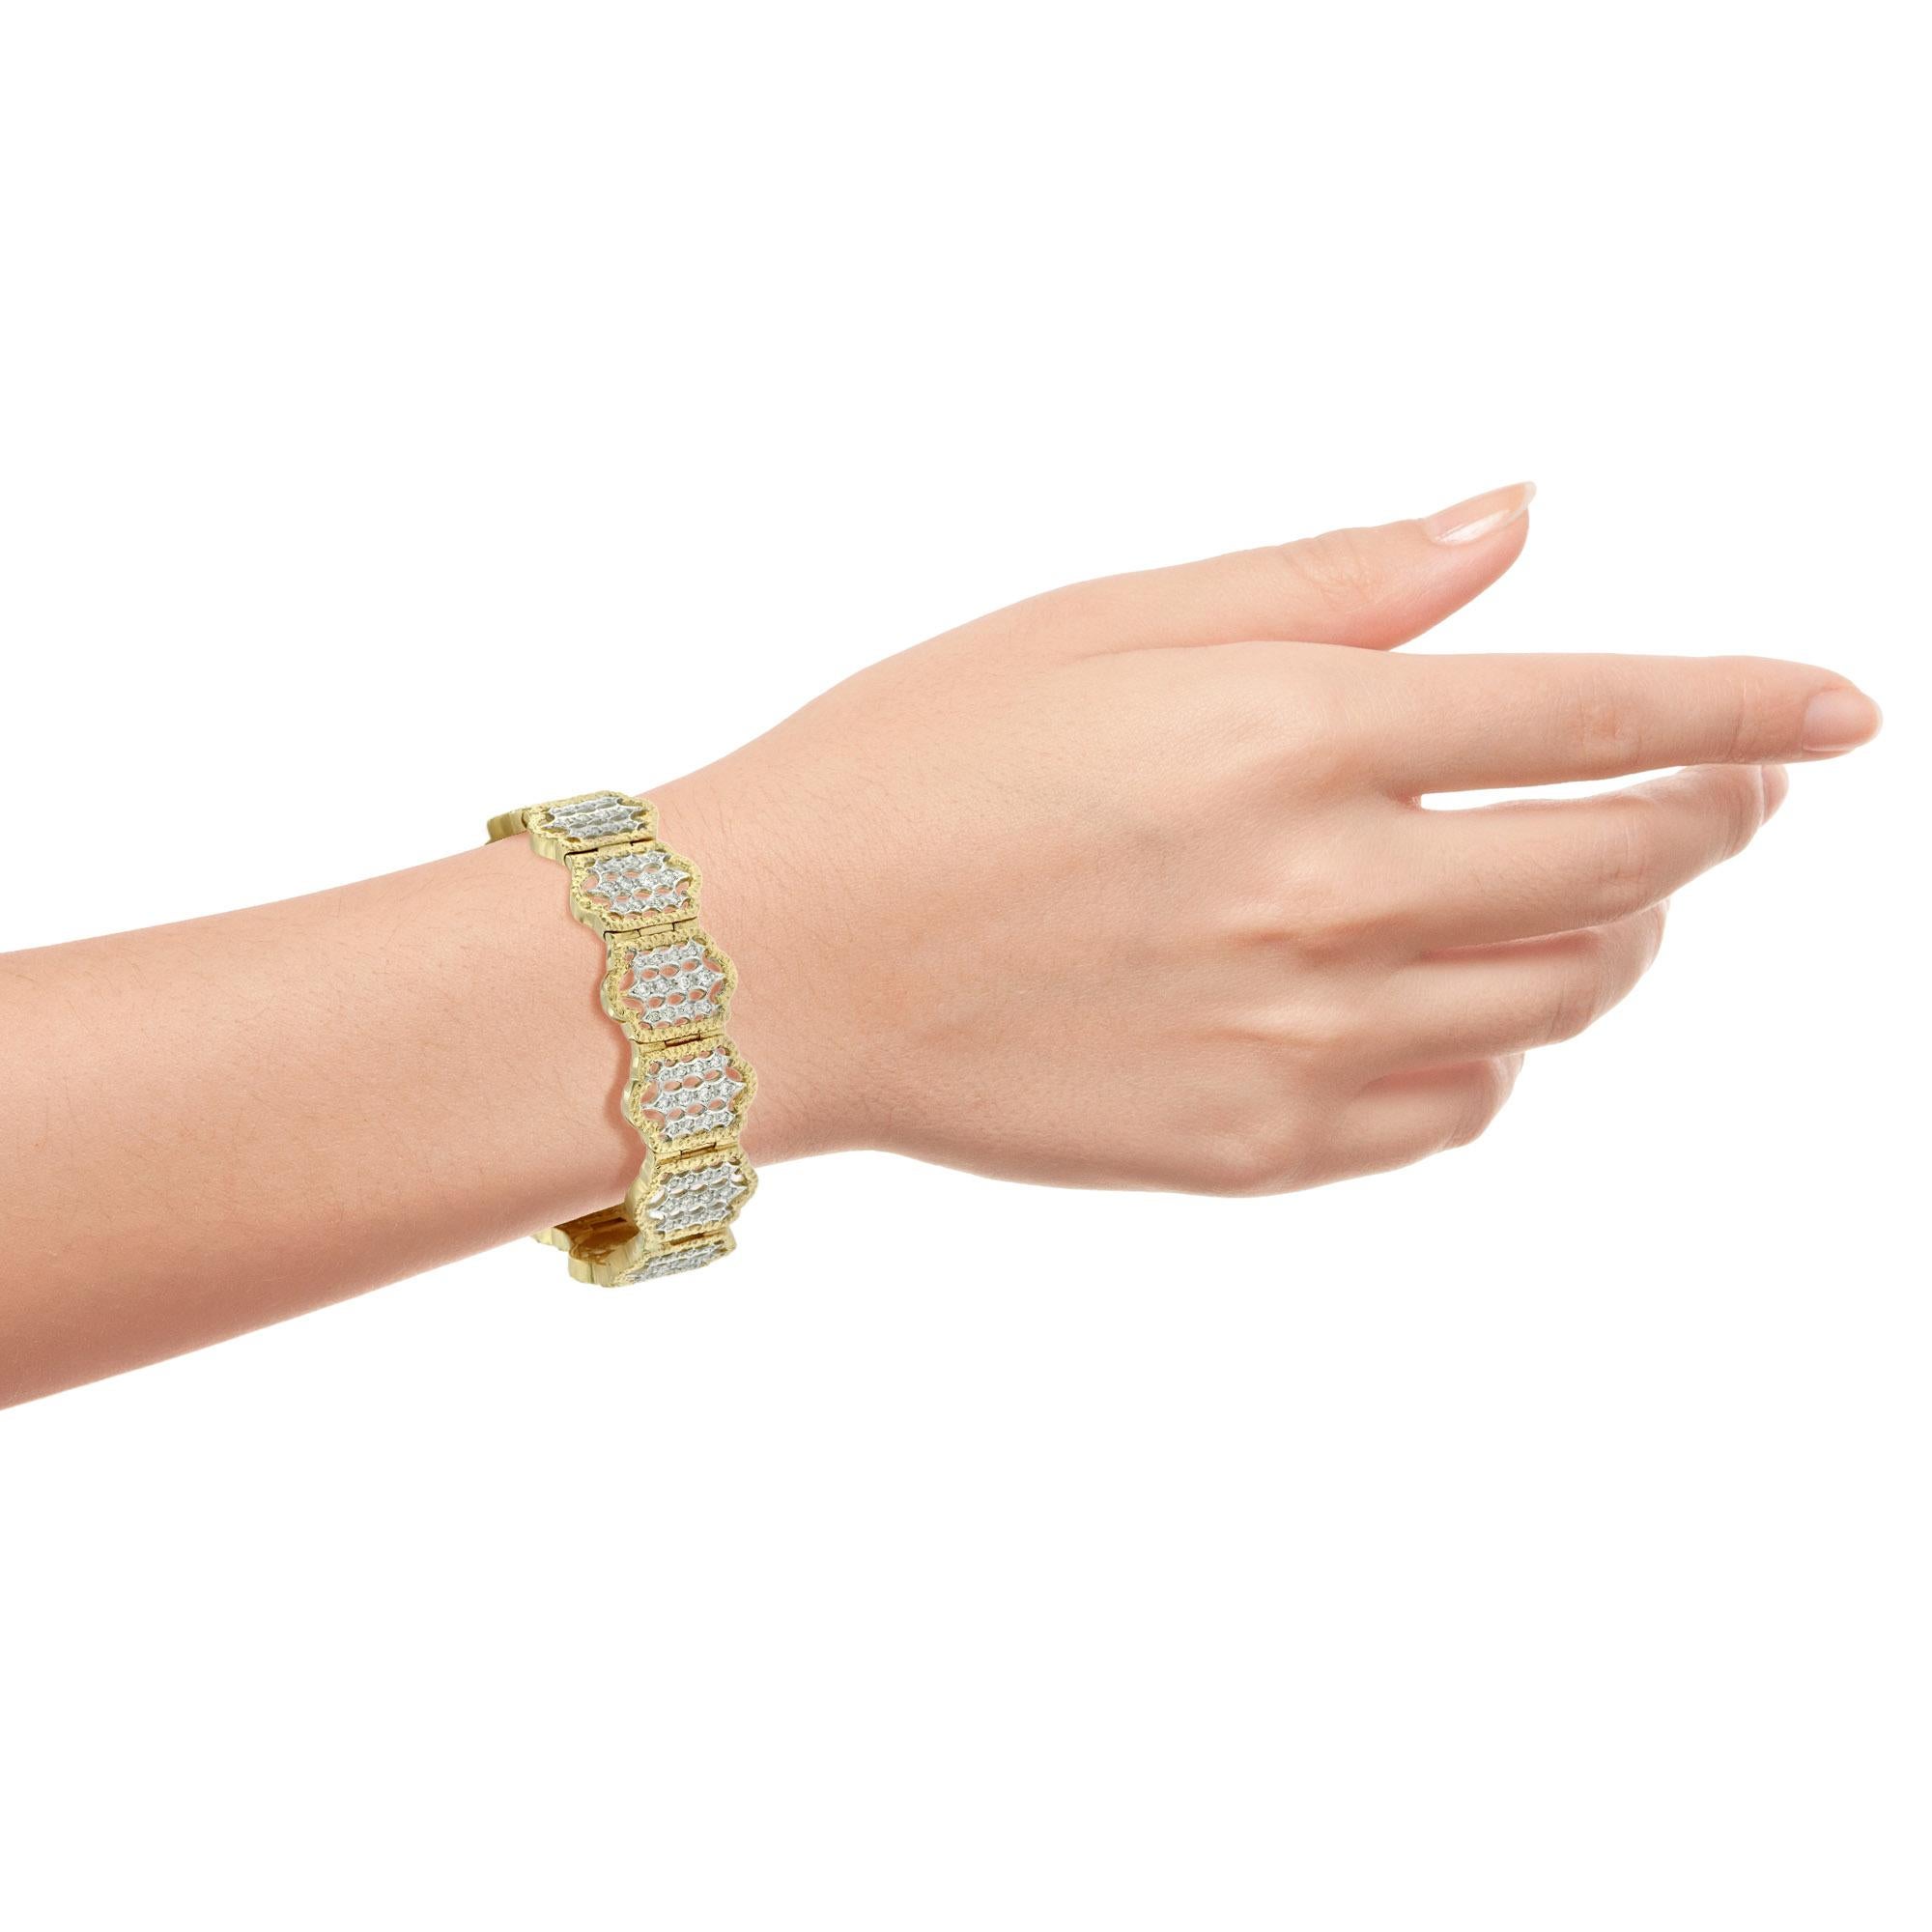 Dieses wunderschöne Armband mit geometrischen Motiven ist sowohl in 18 Karat Weiß- als auch in Gelbgold gefertigt. Der gesamte Rahmen des Armbands ist in sattem Gelbgold gehalten, das einen schönen Kontrast zum hellen Weißgold im Inneren des Rahmens